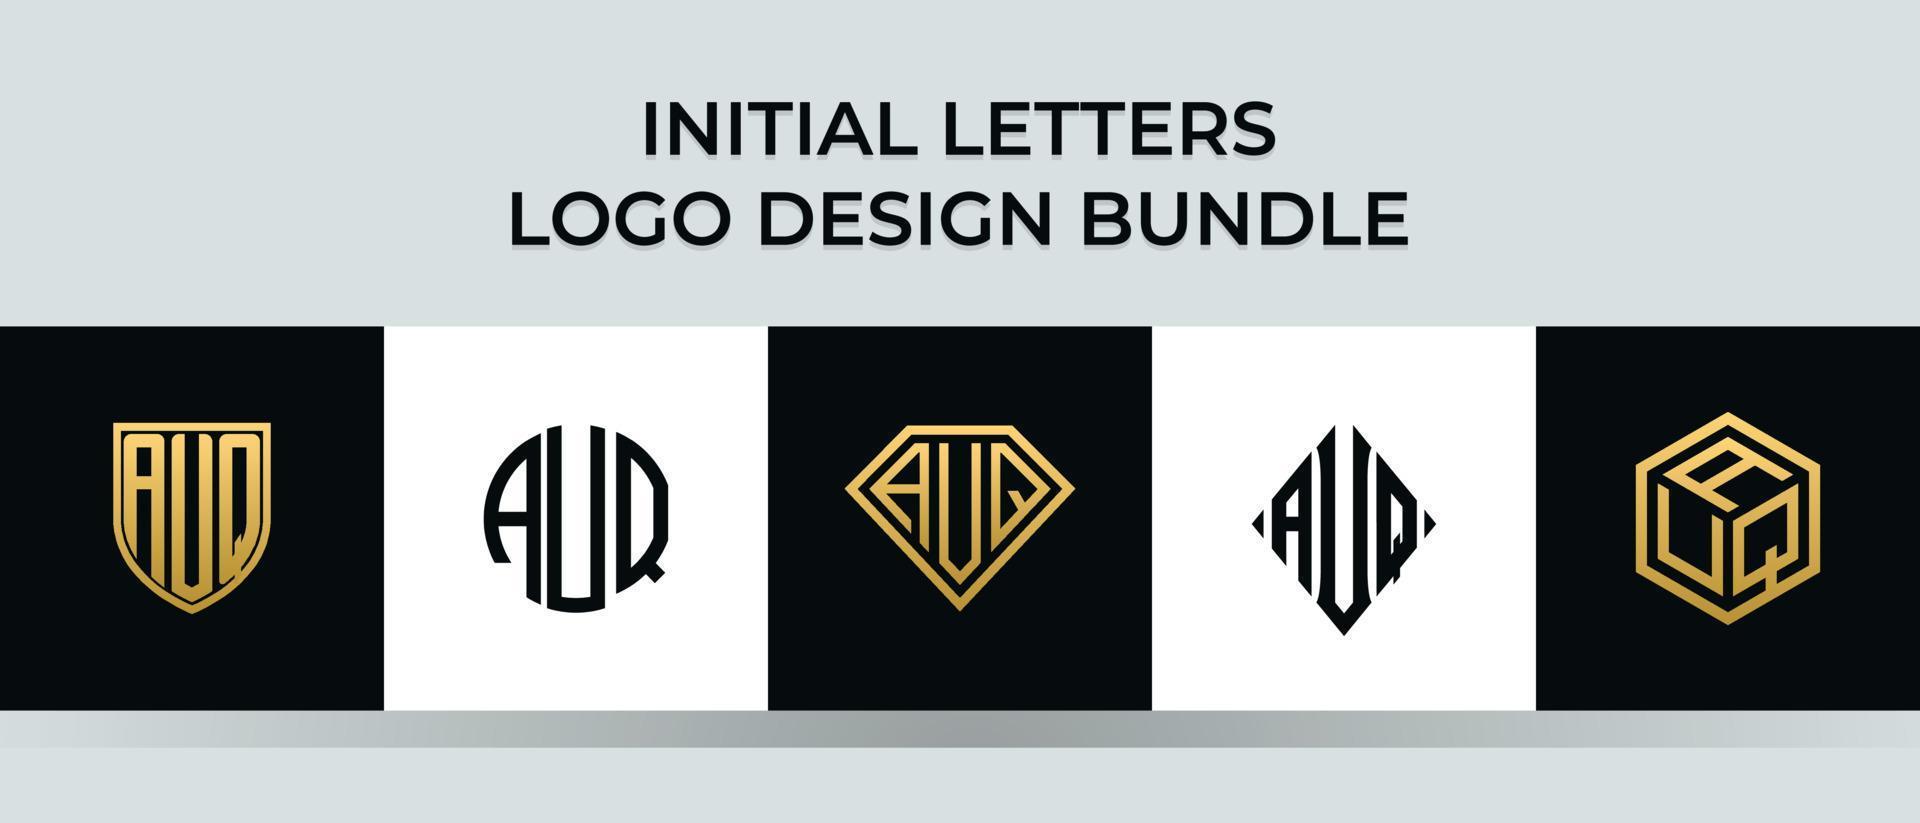 lettere iniziali auq logo design bundle vettore